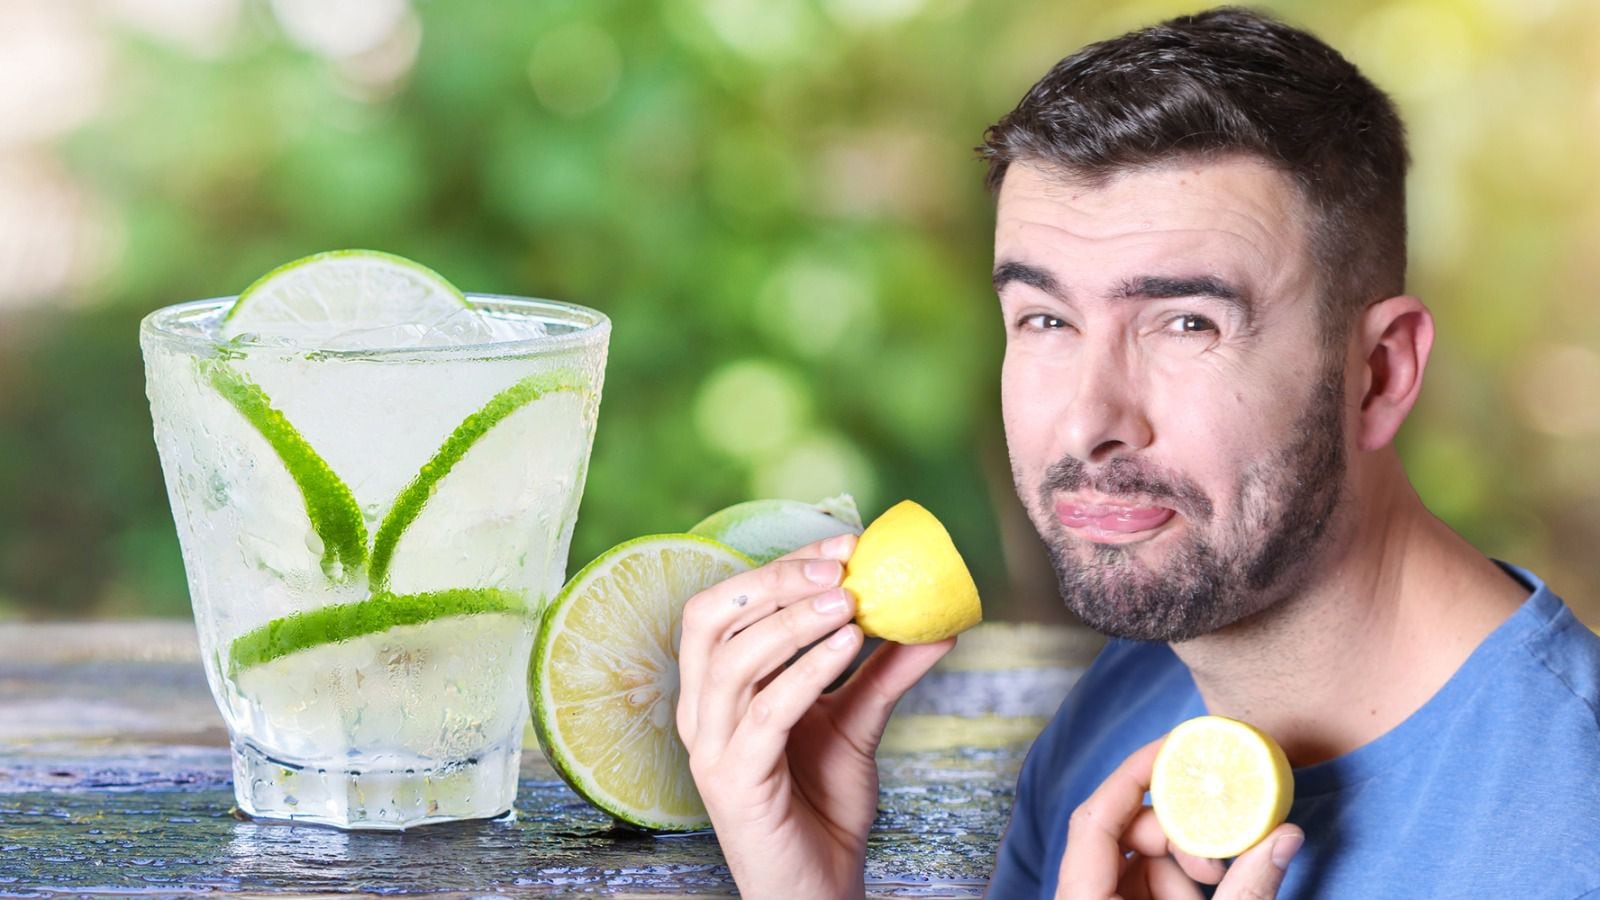 El agua con limón tiene beneficios para tu cuerpo, aunque hay ciertos aspectos que debes considerar para evitar efectos secundarios. (Foto: Especial / El Financiero).